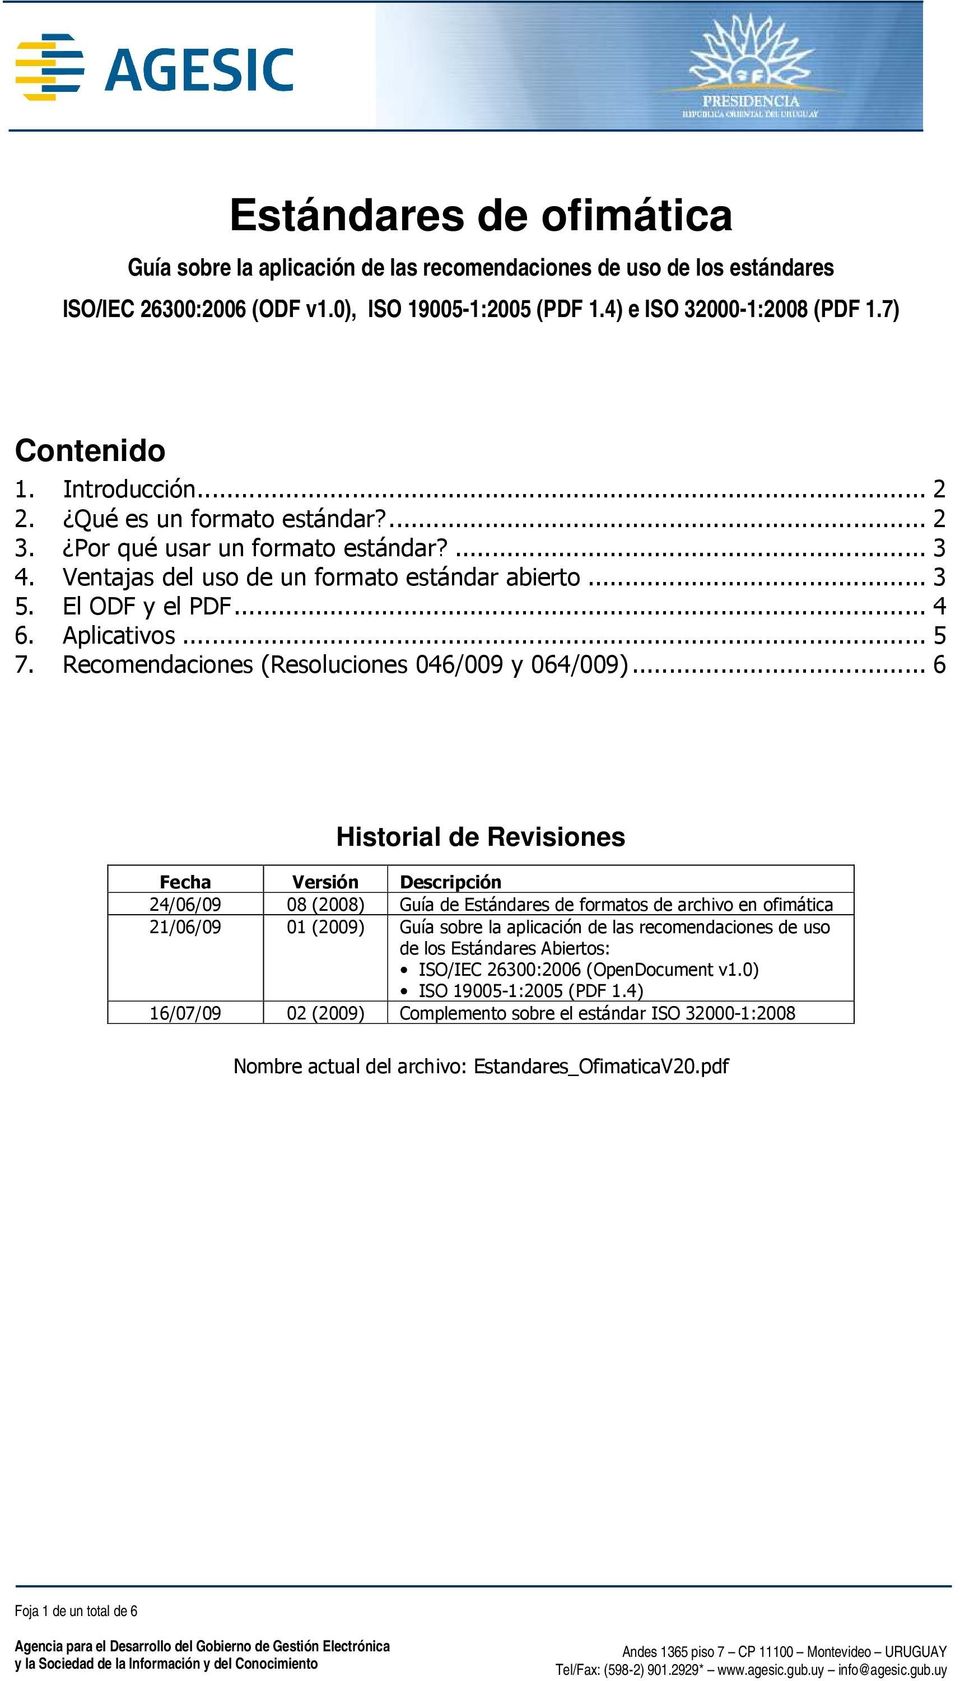 Recomendaciones (Resoluciones 046/009 y 064/009).